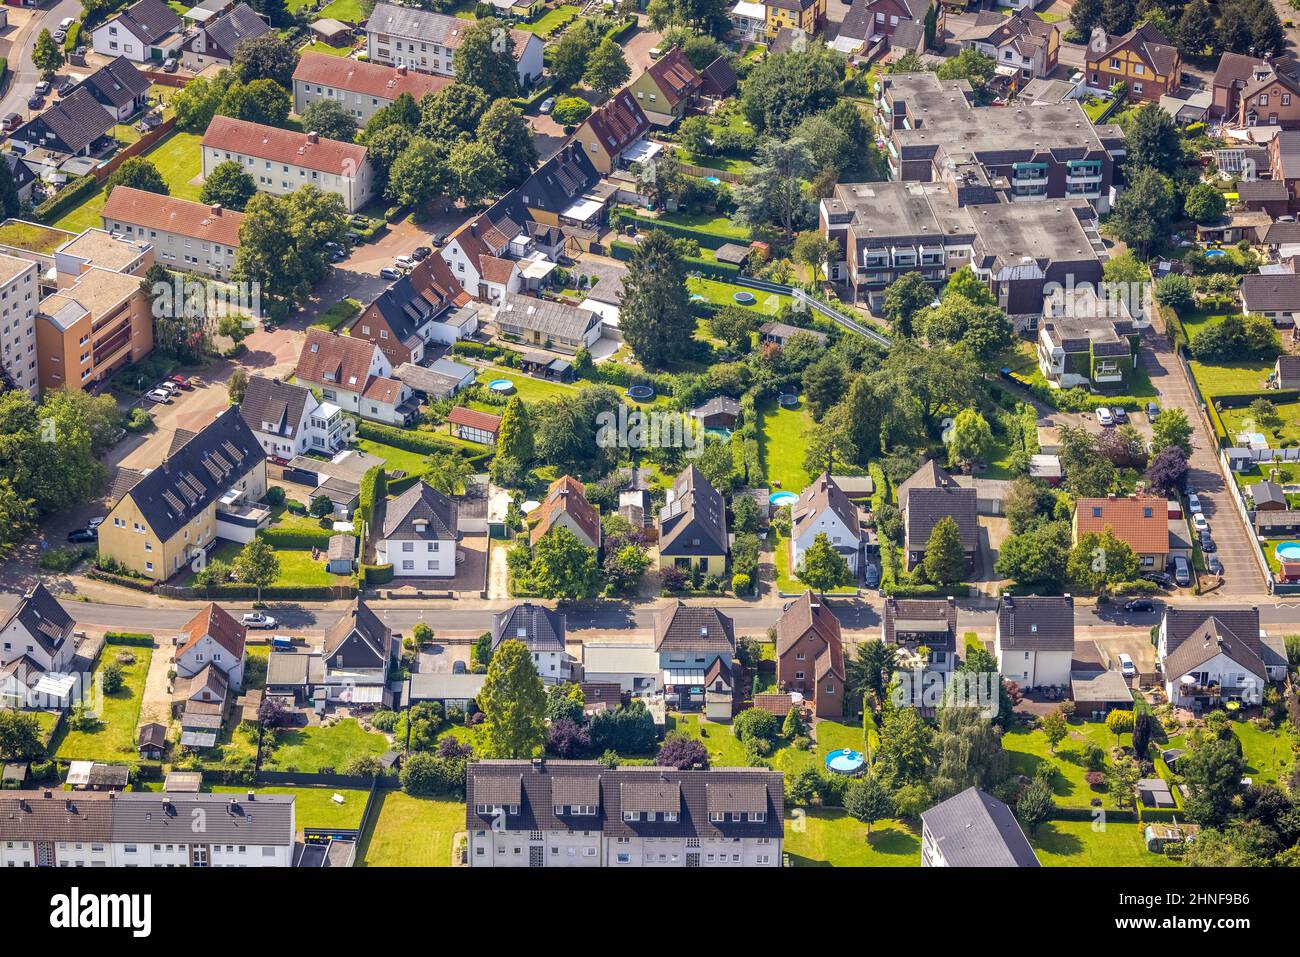 Veduta aerea, Seniorenzentrum Bönen in una proprietà immobiliare a Borgholz, Bönen, zona della Ruhr, Renania settentrionale-Vestfalia, Germania, la casa degli anziani, la casa degli anziani Foto Stock